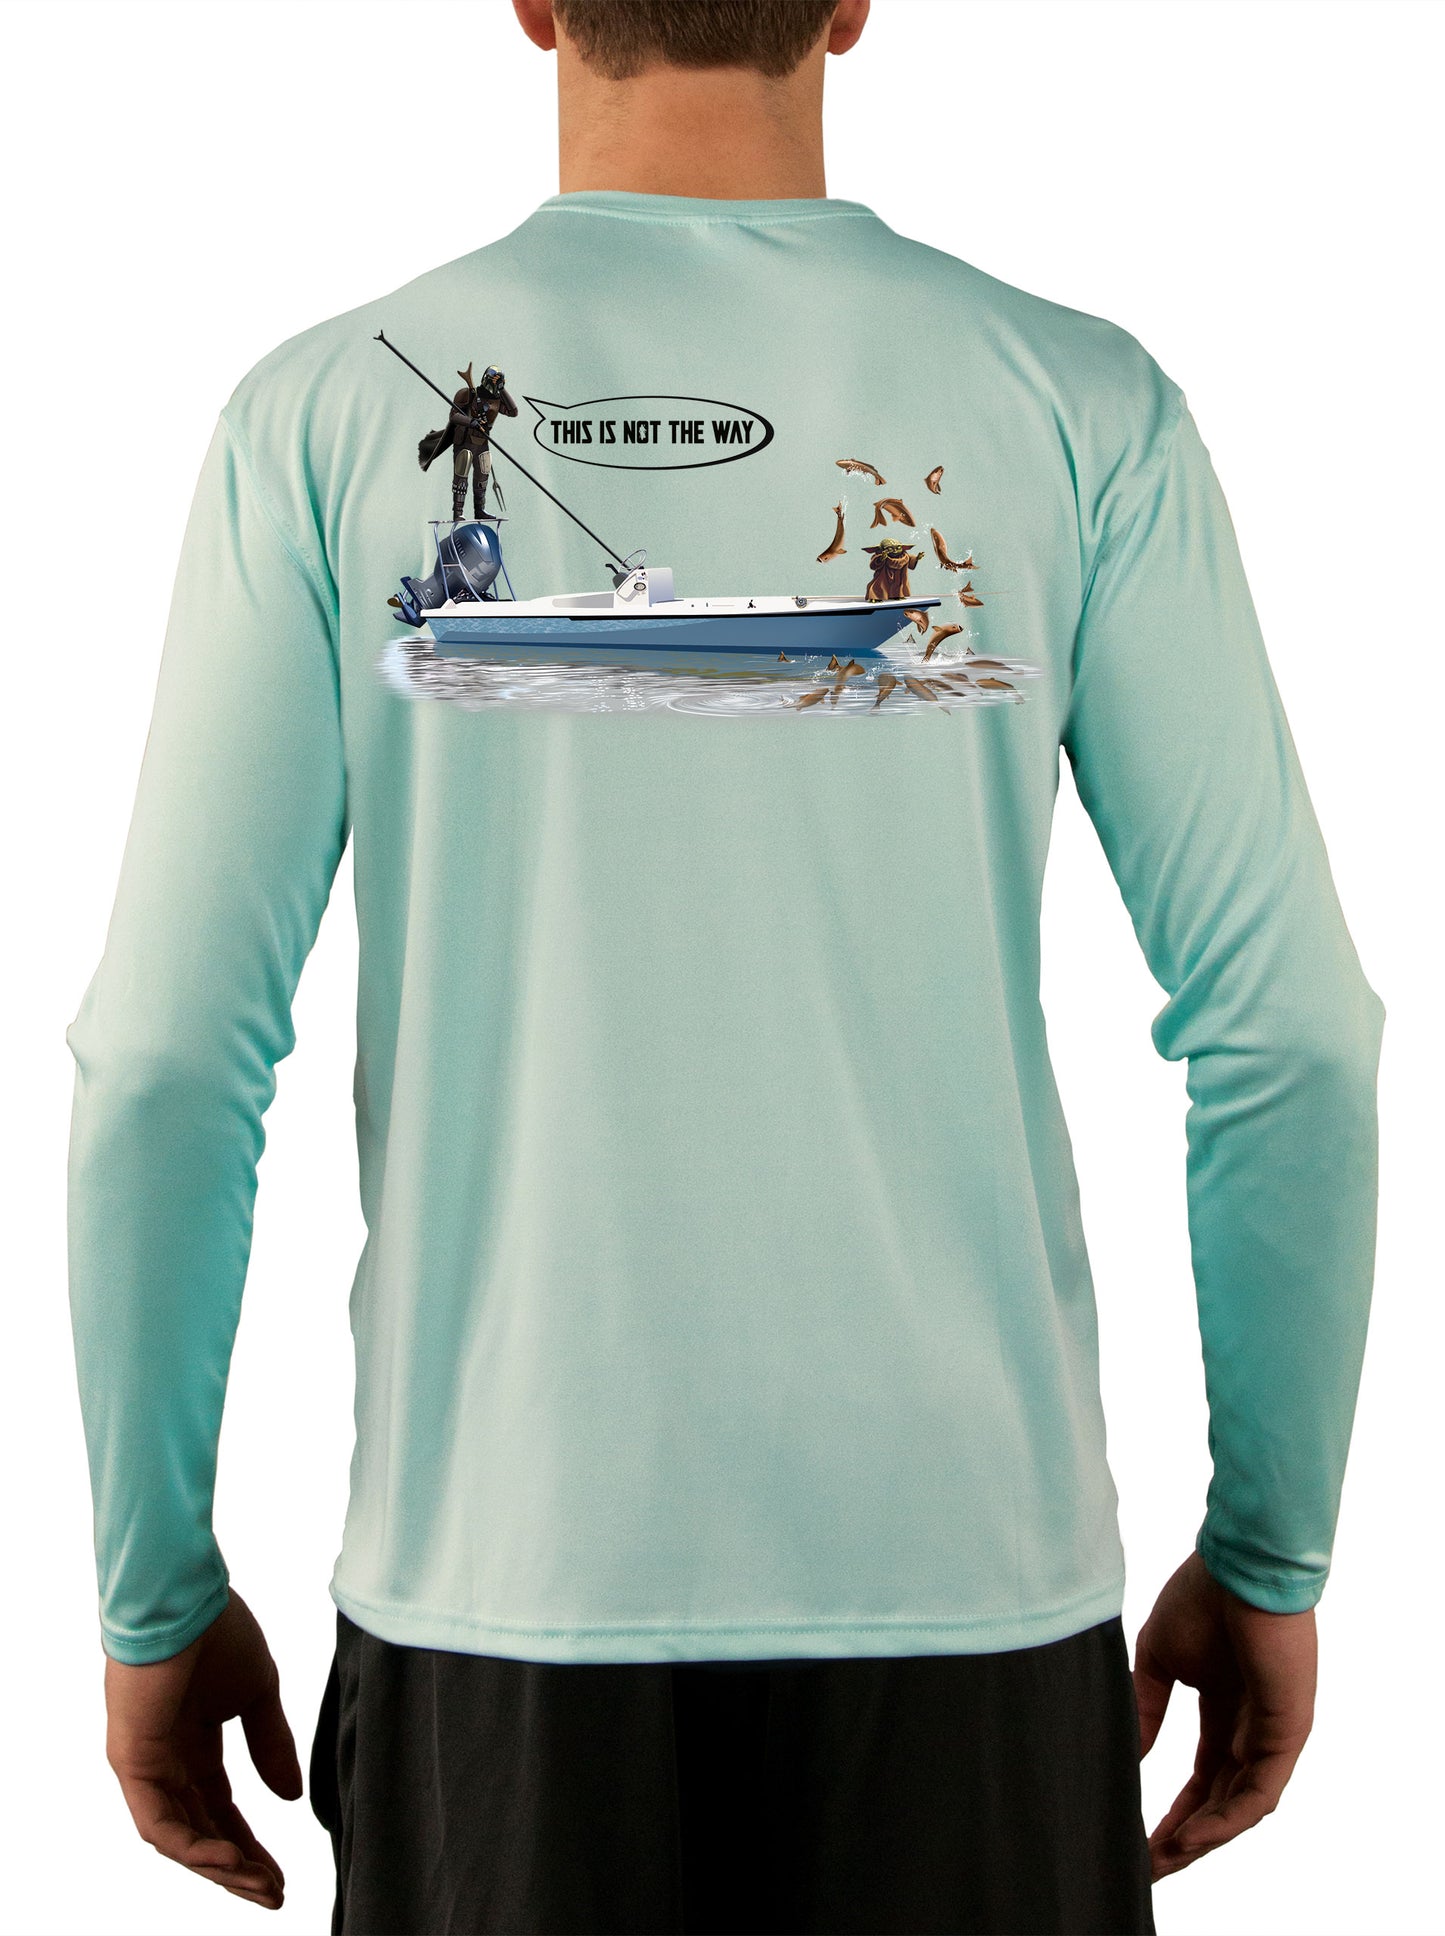 Mandalorian Grogu Baby Yoda Fishing Shirts For Men Star Wars Poling Skiff - Skiff Life